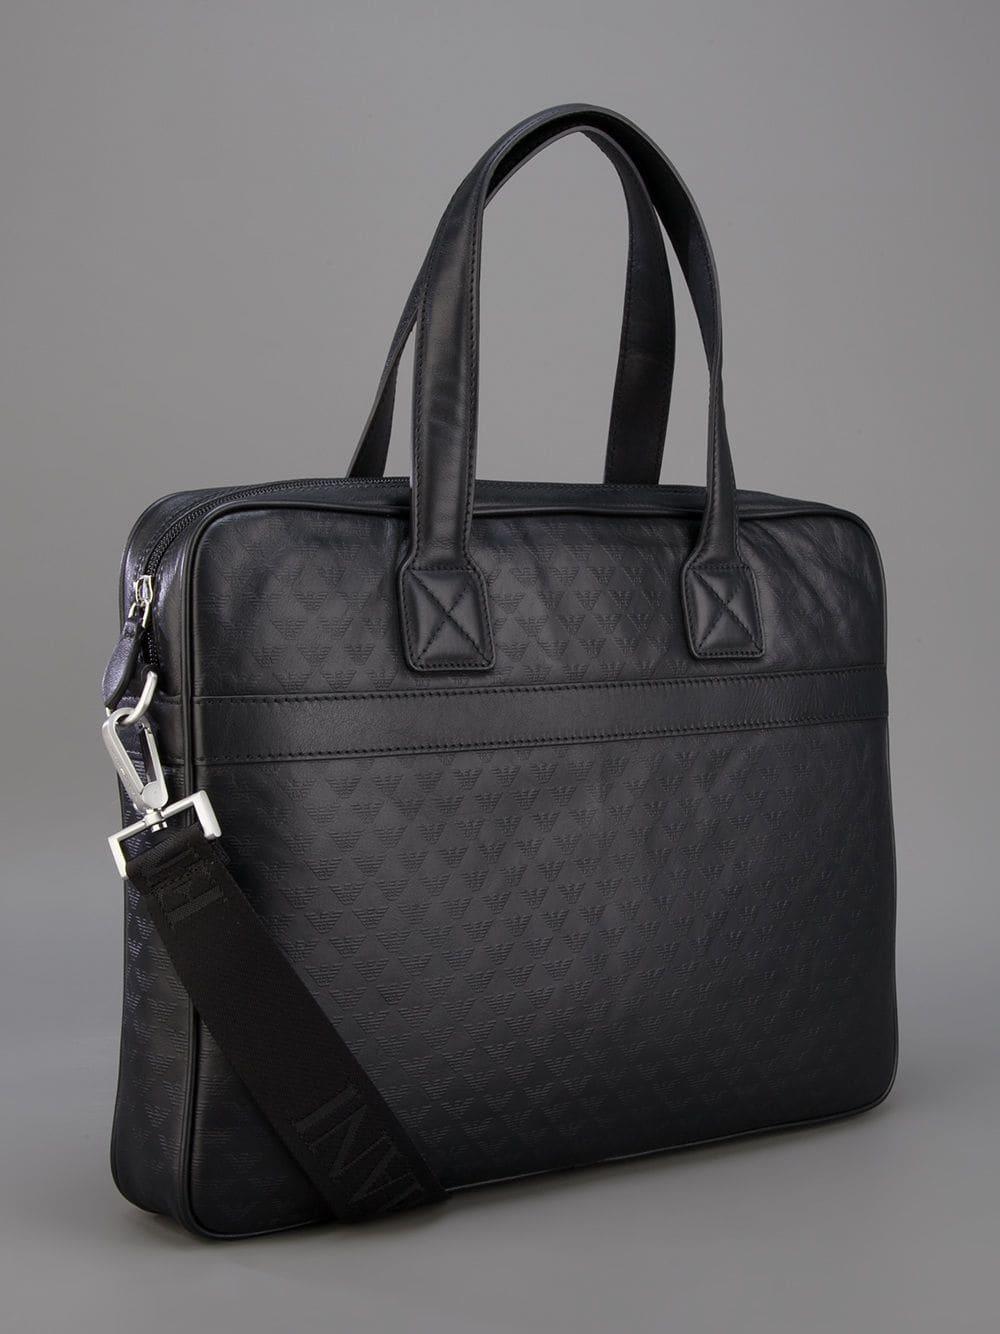 Armani logo-print Leather Shoulder Bag - Black